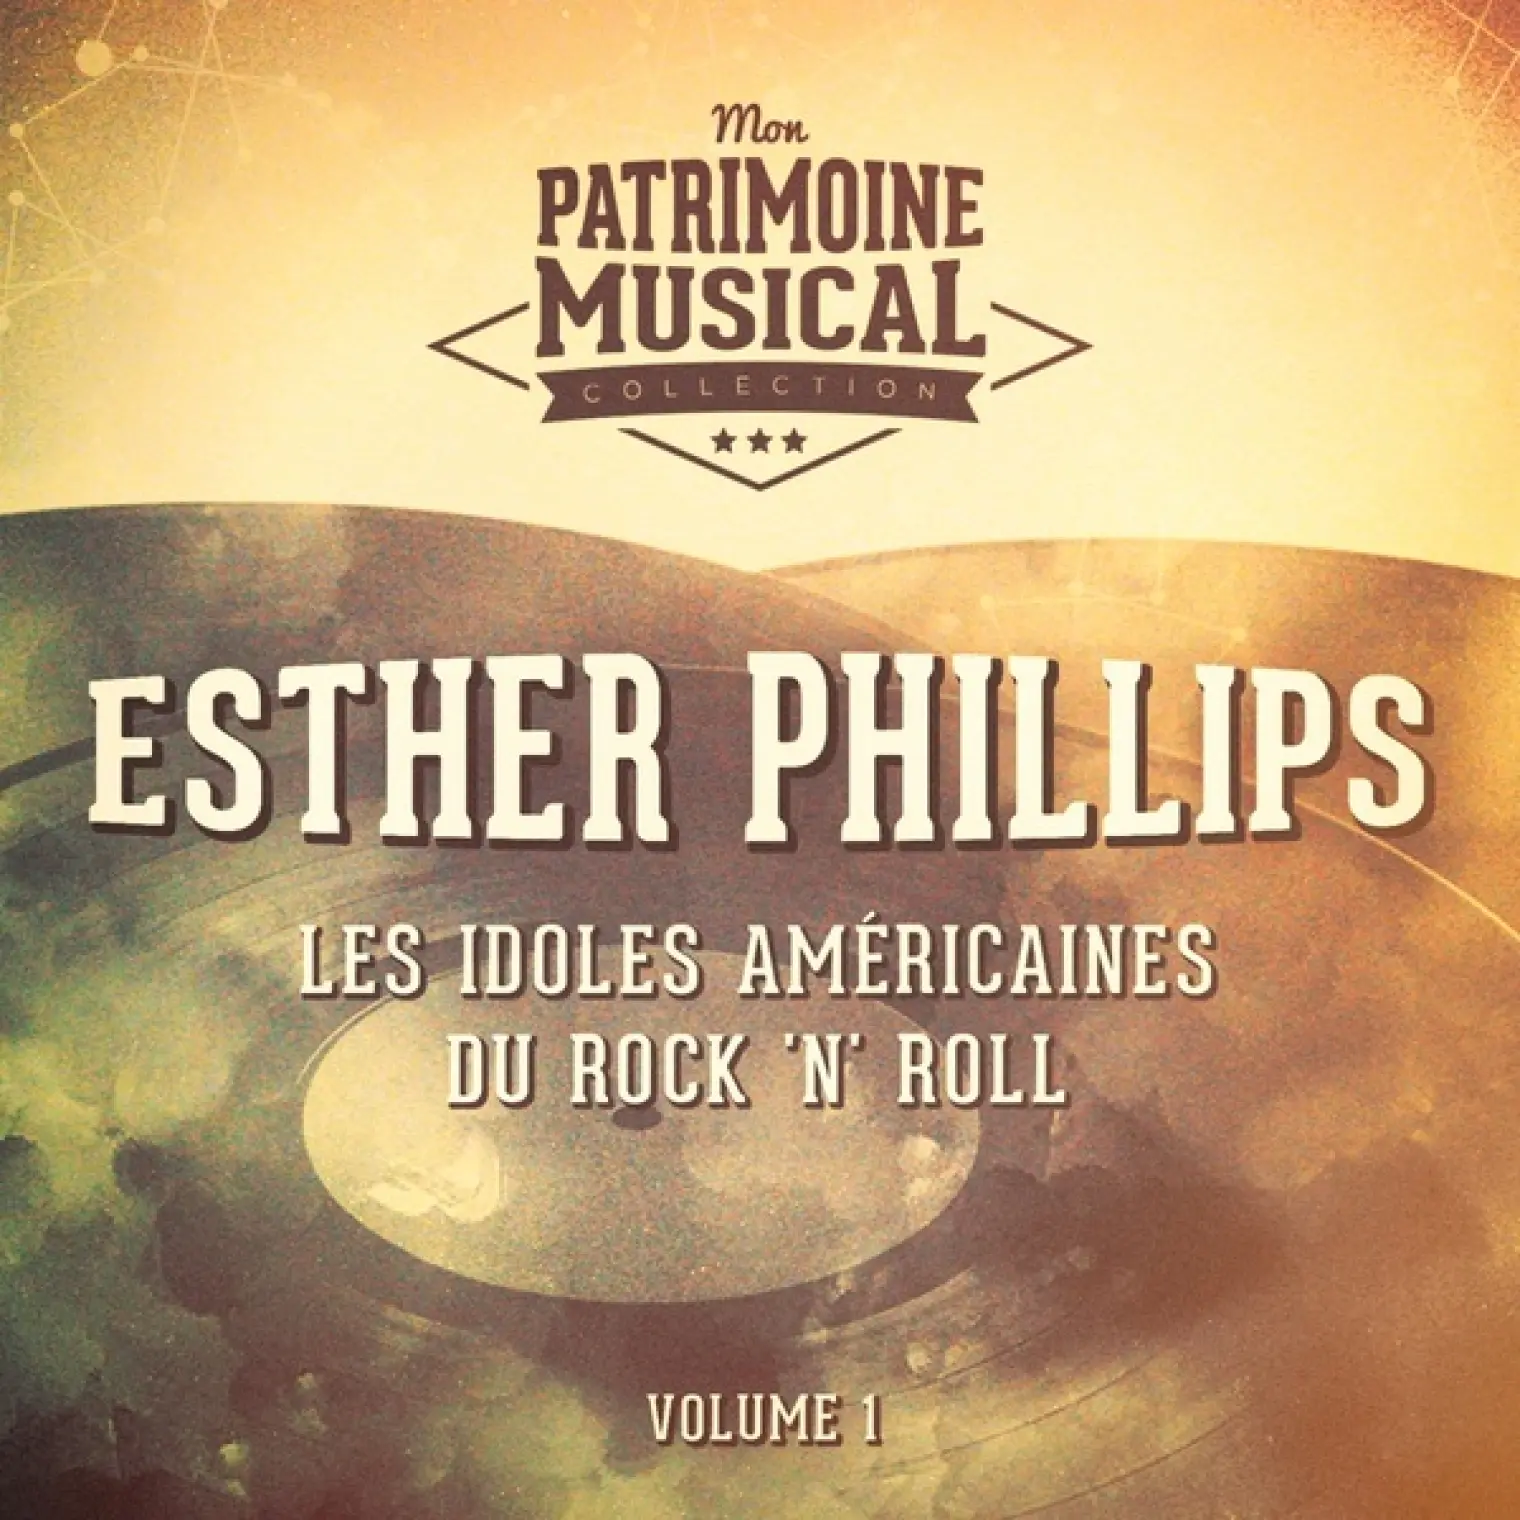 Les Idoles Américaines Du Rock 'N' Roll: Esther Phillips, Vol. 1 -  Esther Phillips 